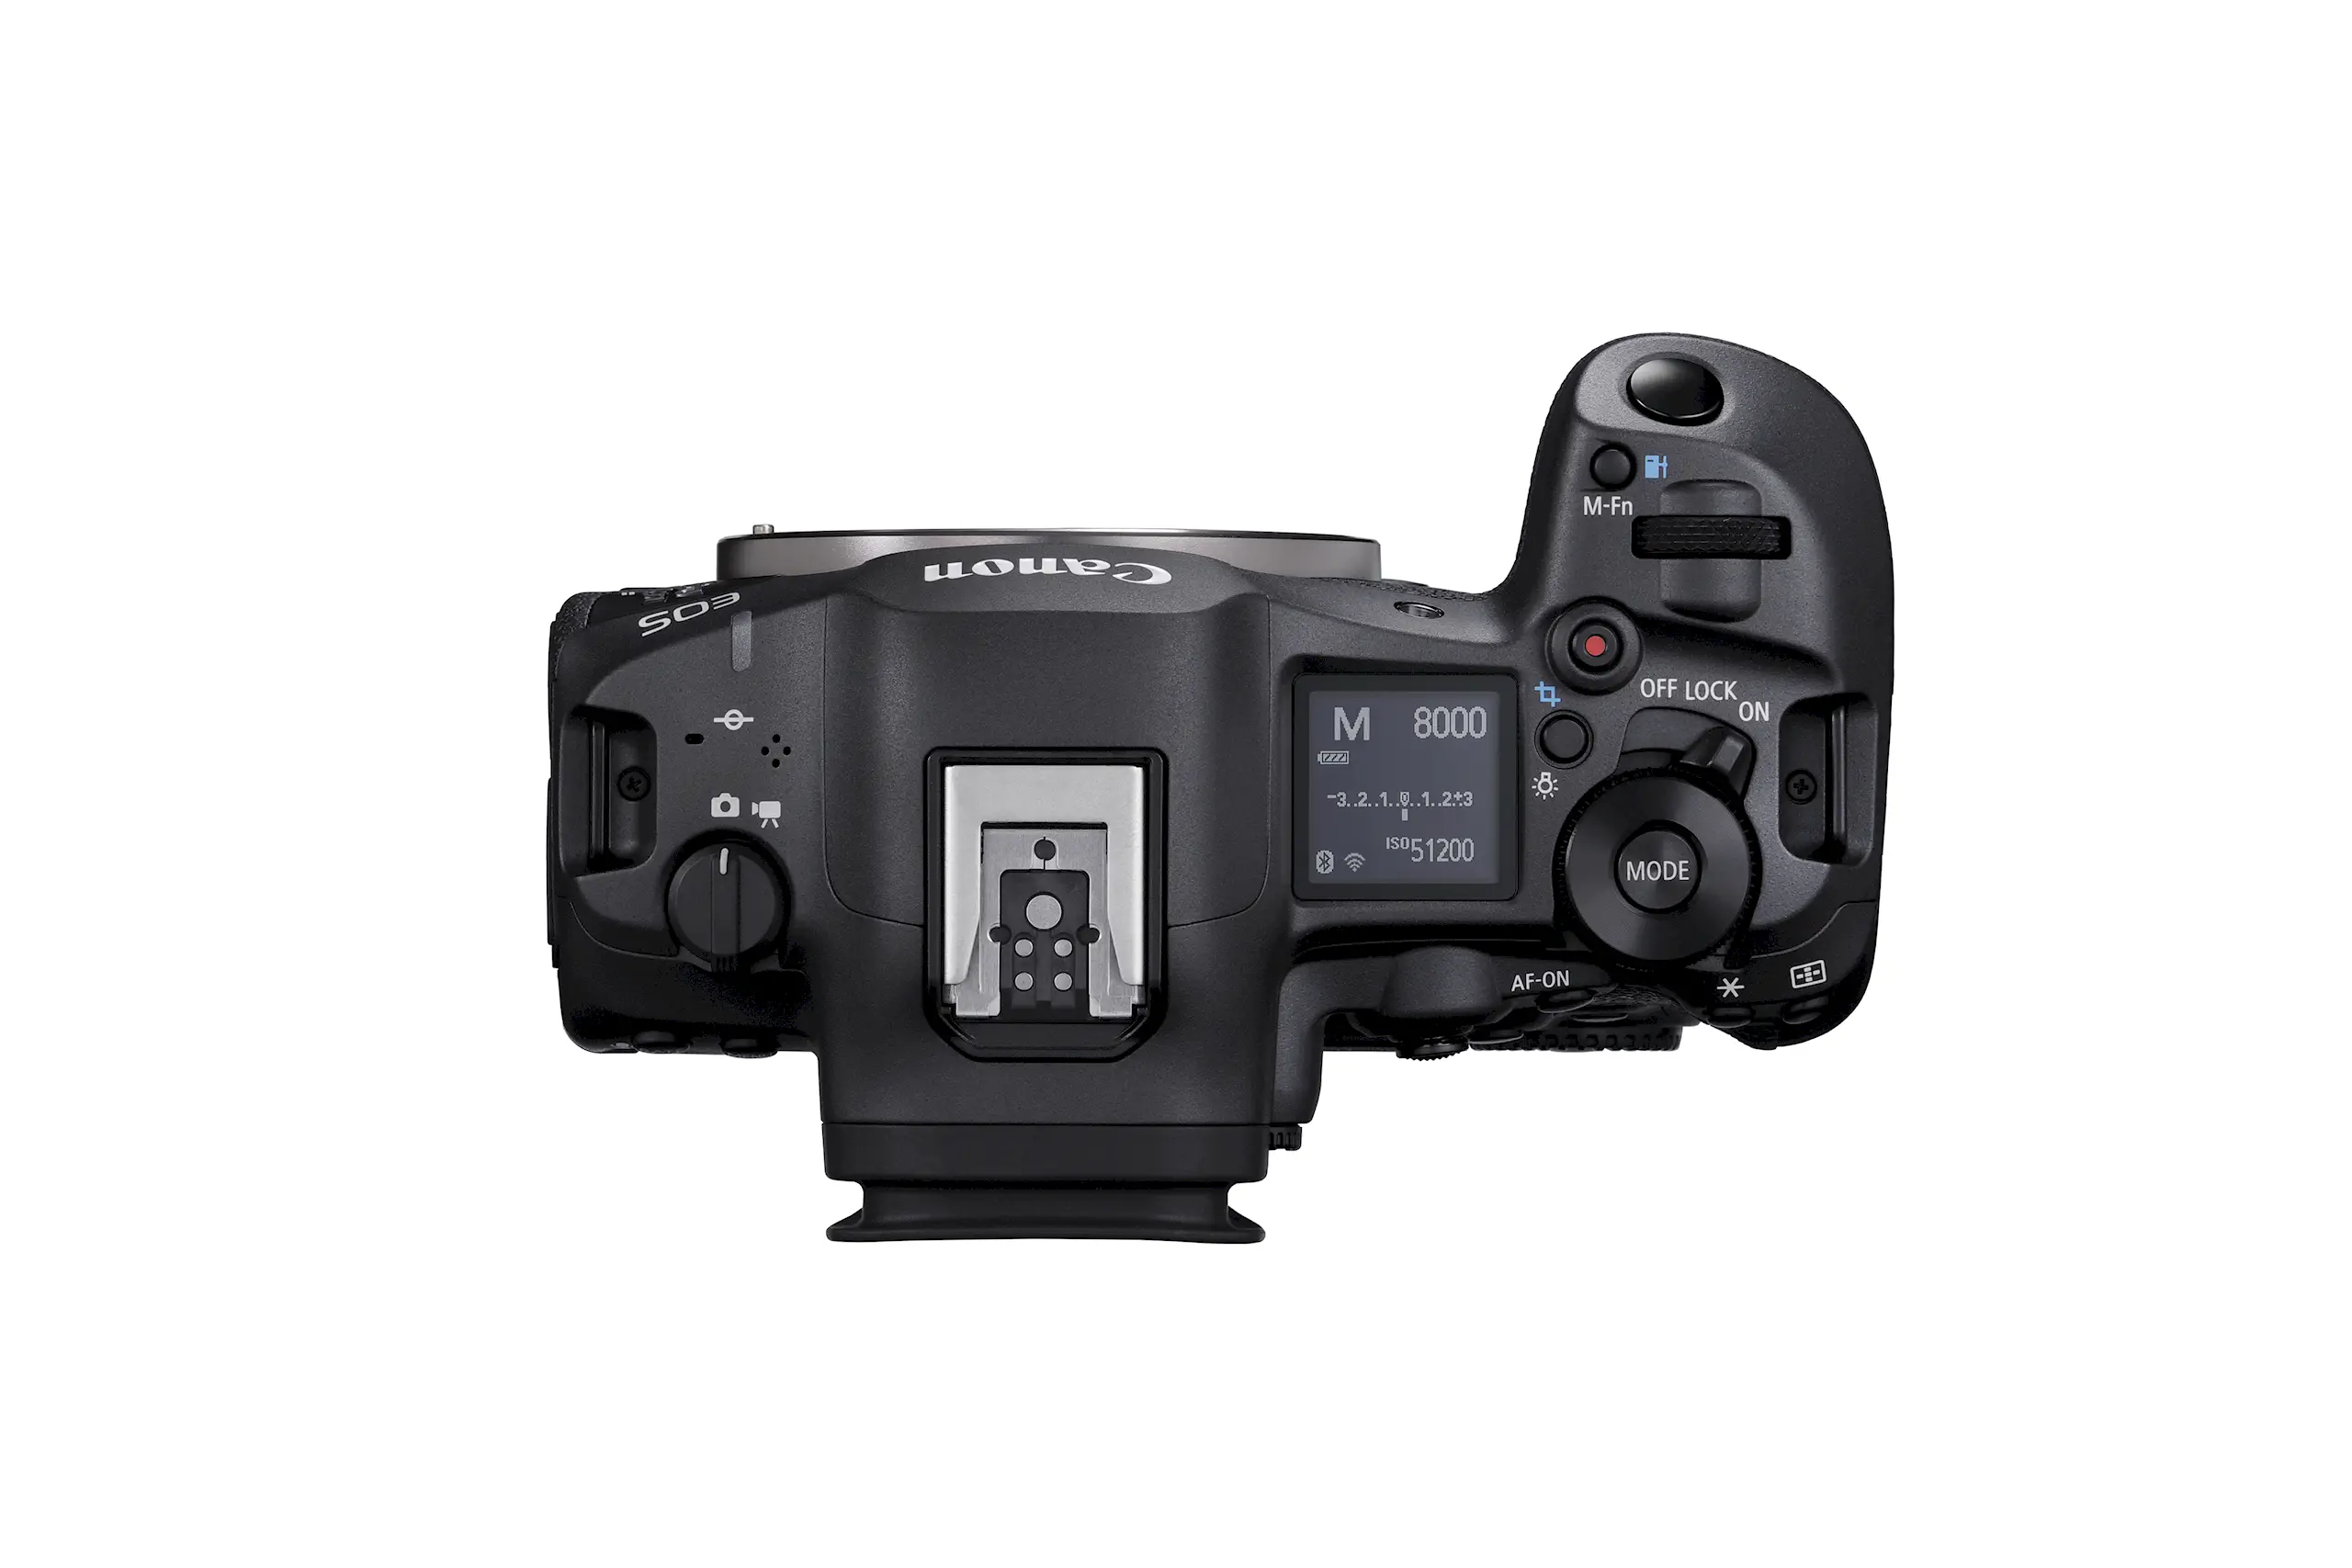 Máy ảnh Canon EOS R5 Mark II ra mắt với các công nghệ hình ảnh thế hệ mới